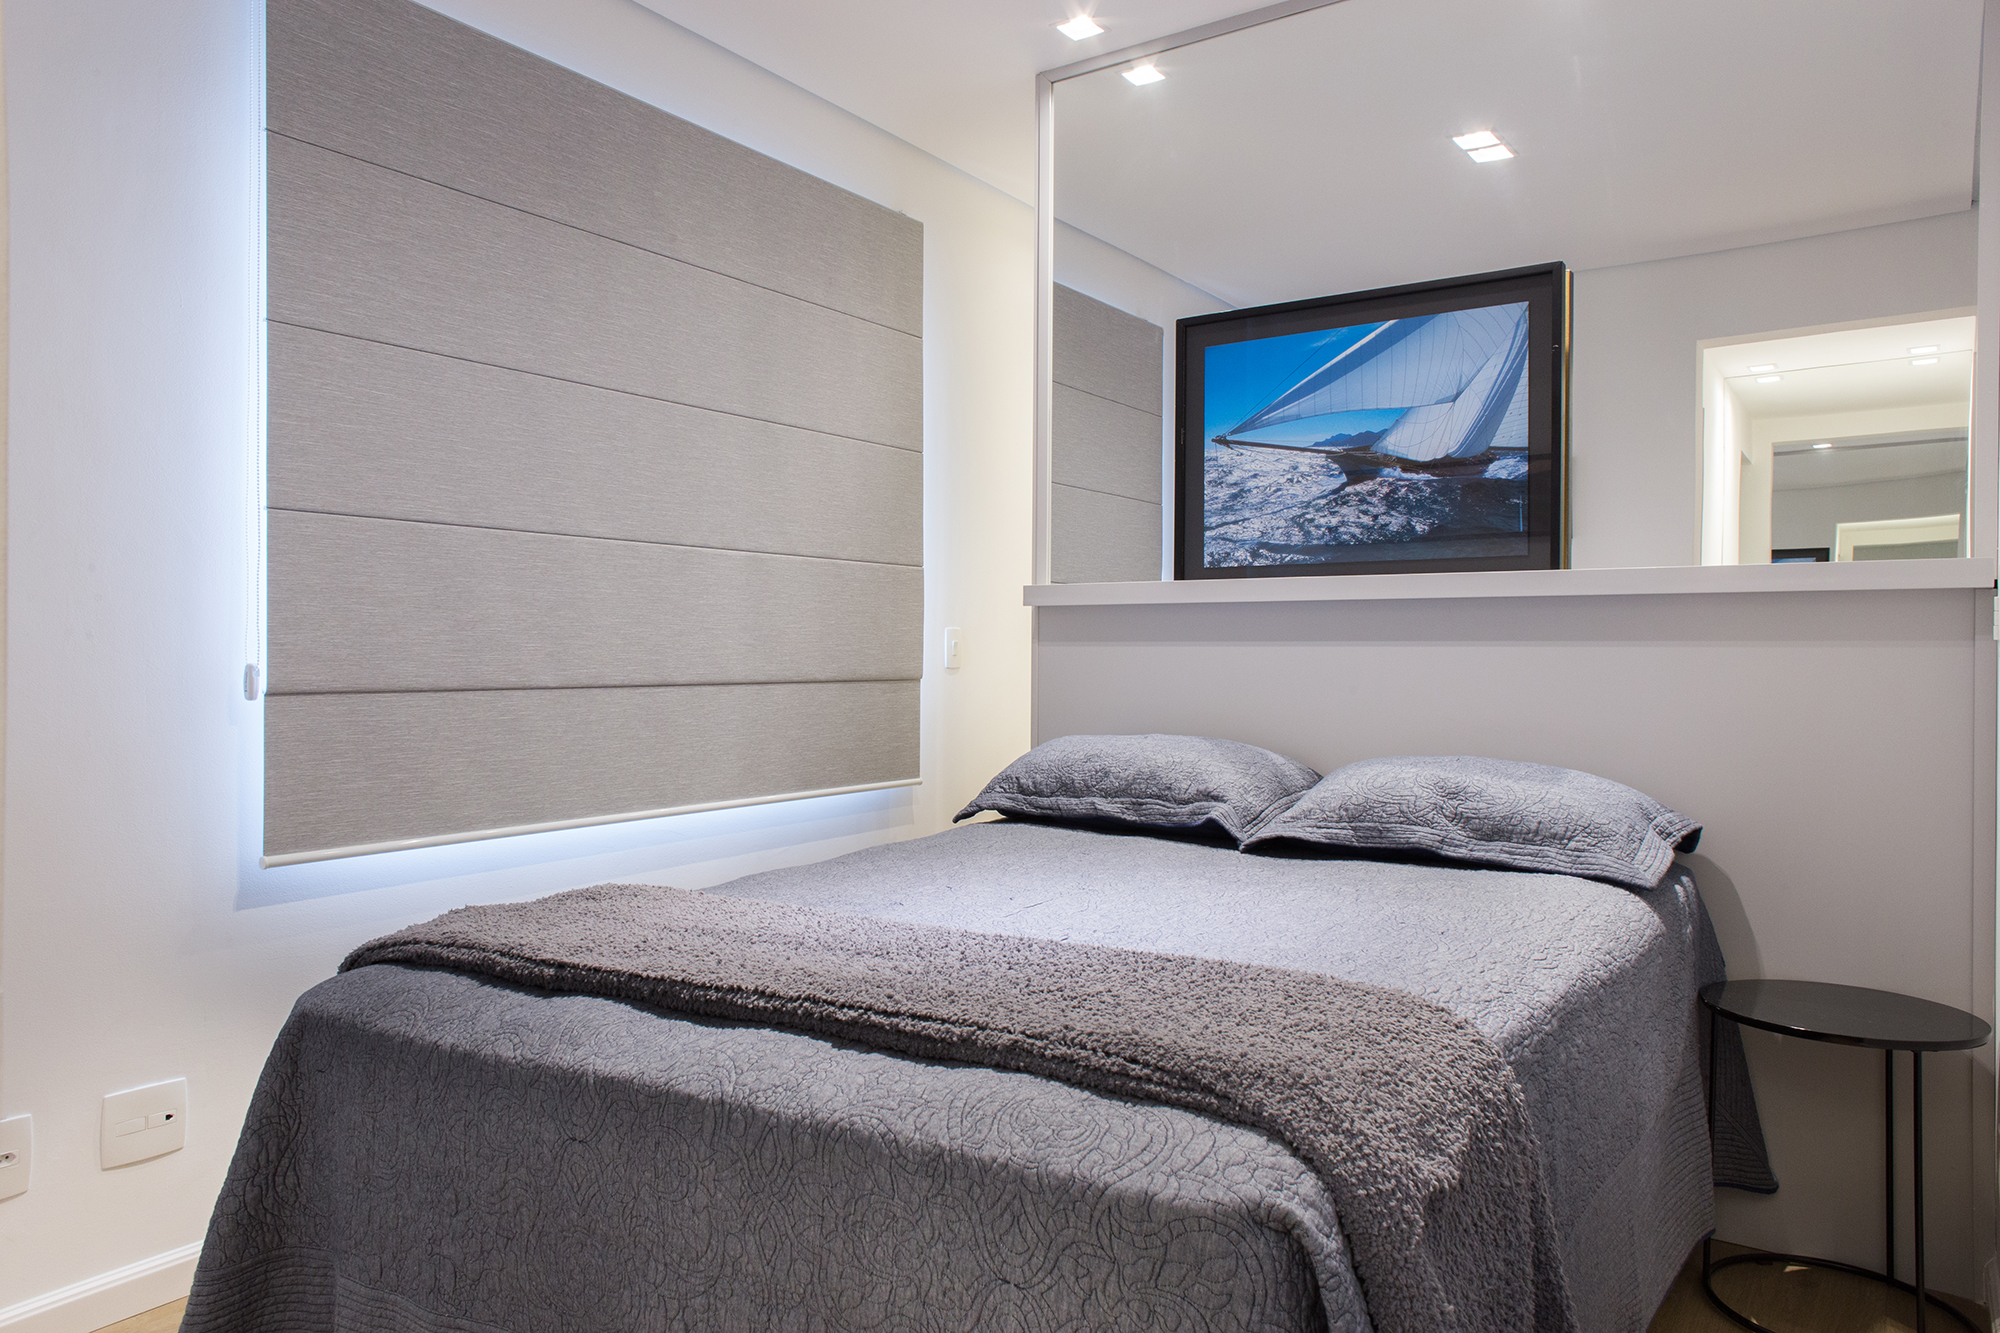 Cinza azul lavanderia armário apê 29 m2 Inovando Arquitetura decoração estudio quarto cama quarto cortina